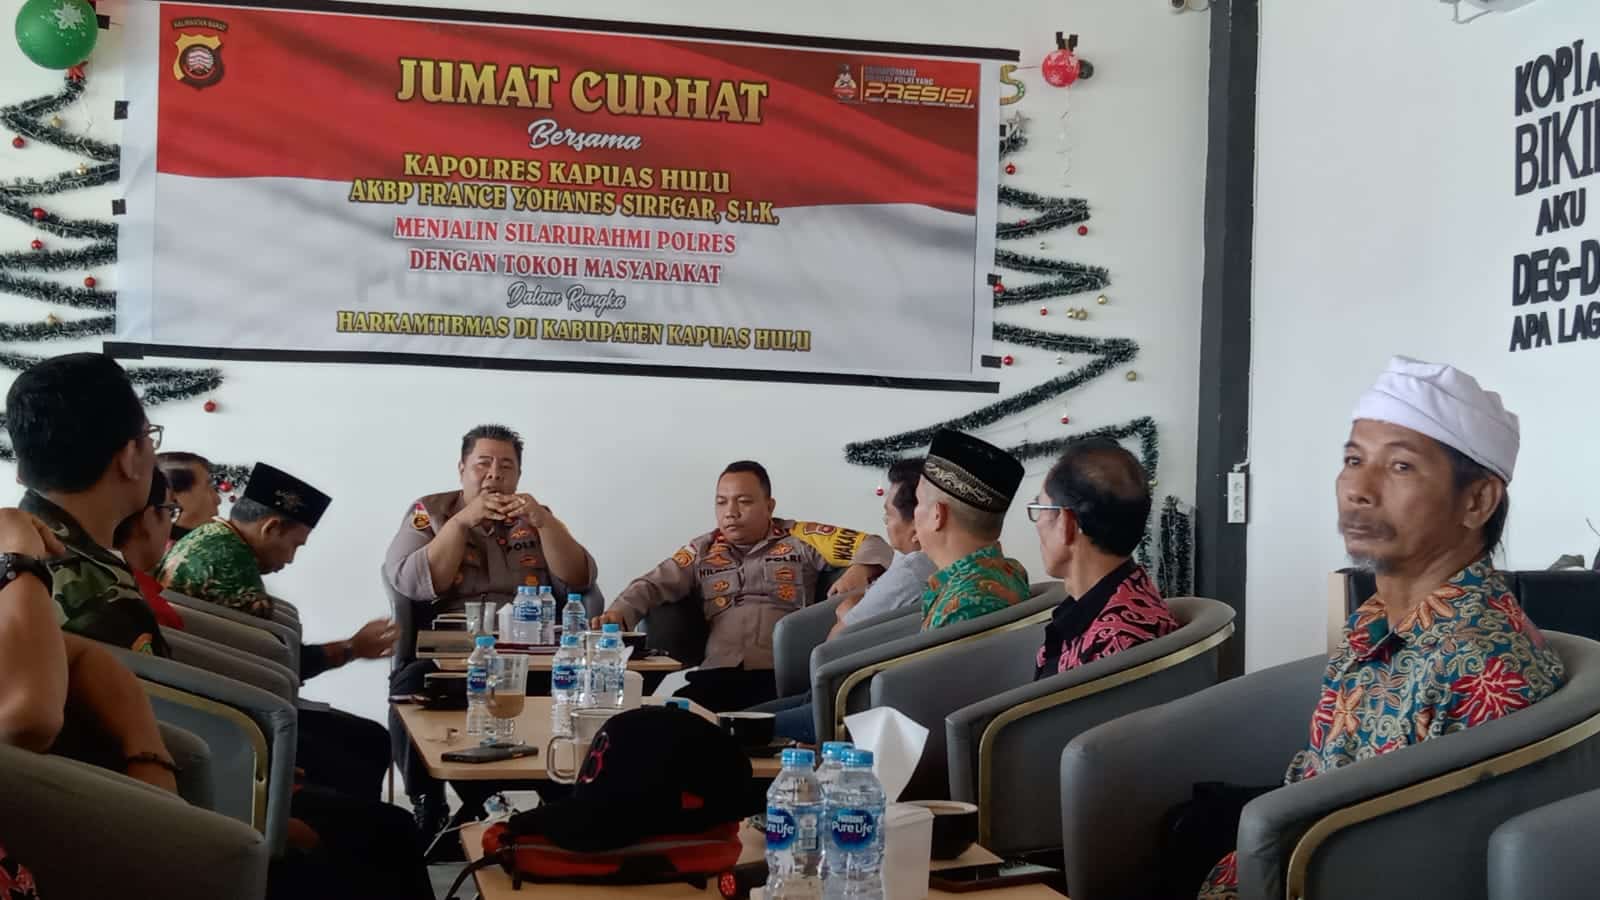 Kegiatan "Jum'at Curhat" yang dipimpin langsung oleh Kapolres Kapuas Hulu, AKBP France Yohanes Siregar ini dilaksanakan di Cafe "Kopi Dari Hati Putussibau". (Foto: Ishaq)